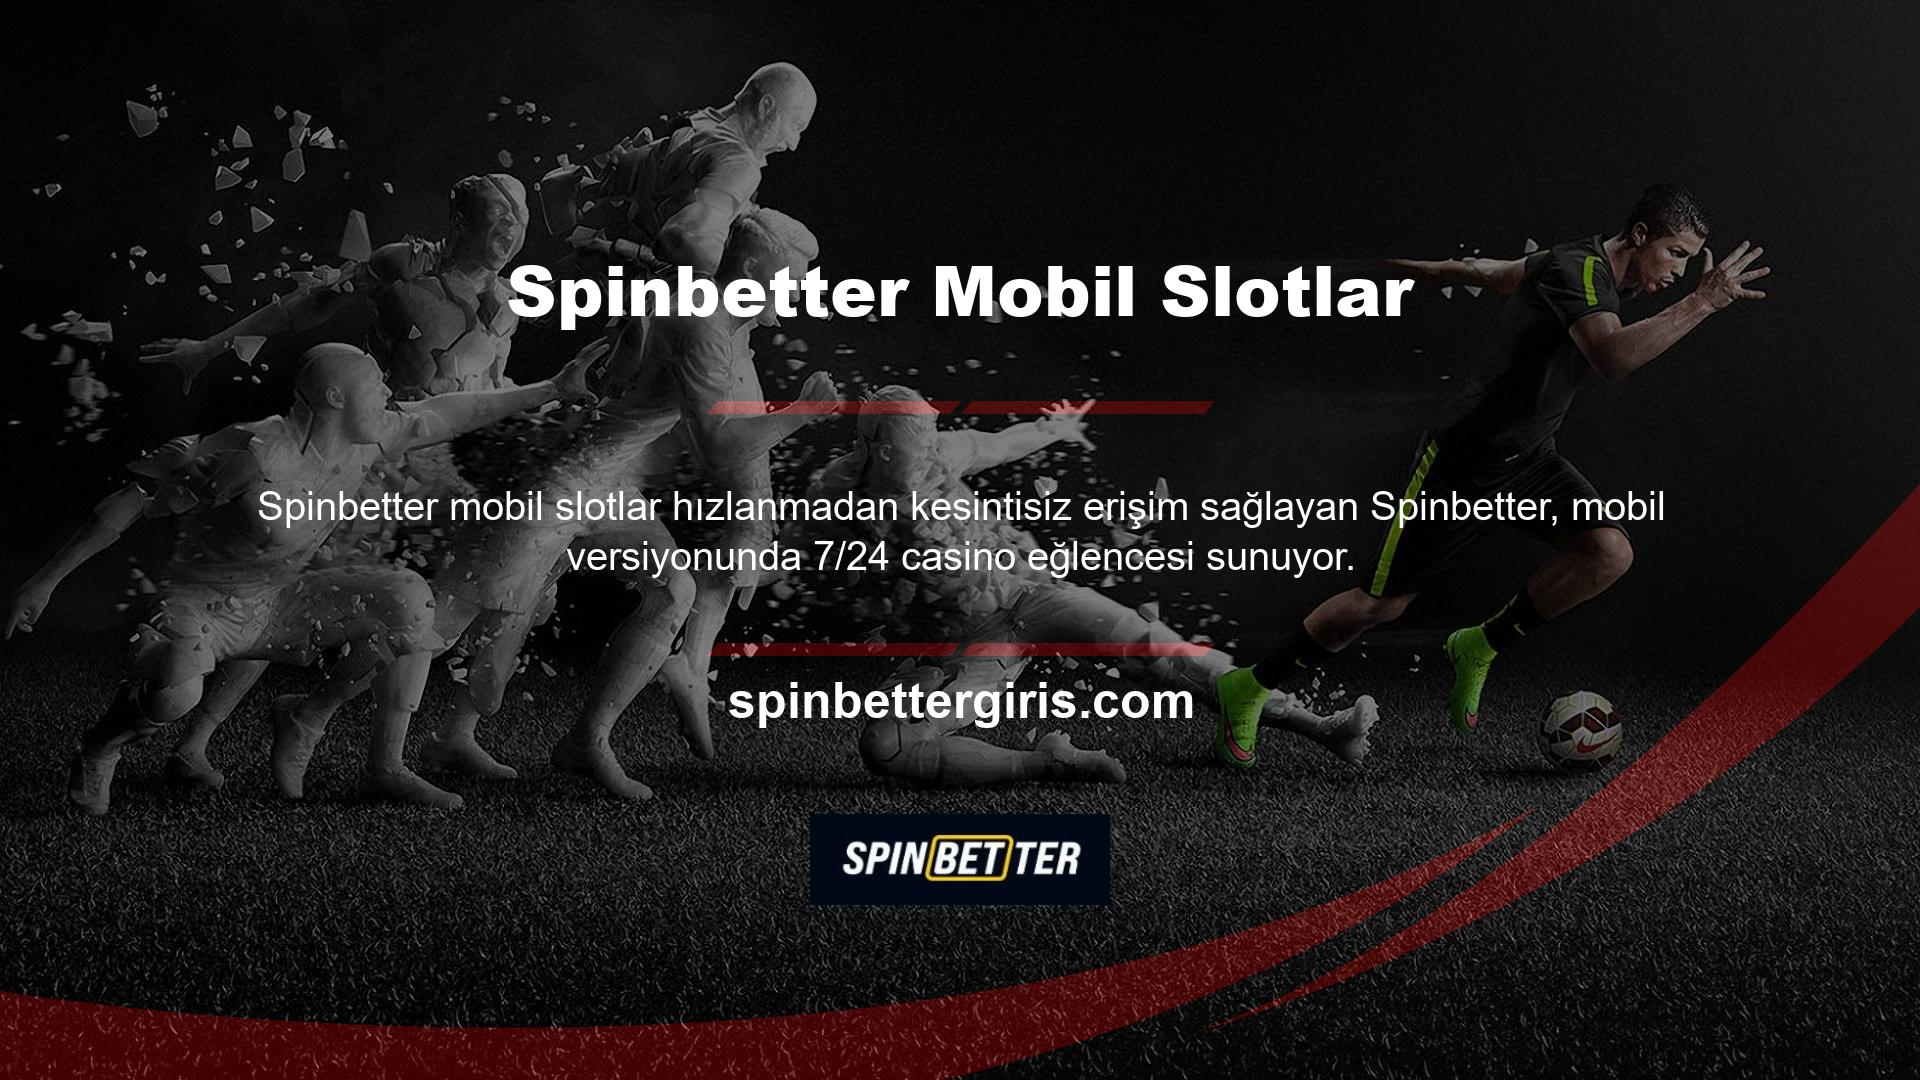 Mobil giriş seçeneğini kullanarak Spinbetter 3D Slots ve Canlı Casinoya bağlanın ve cep telefonunuzdan istediğiniz zaman erişin